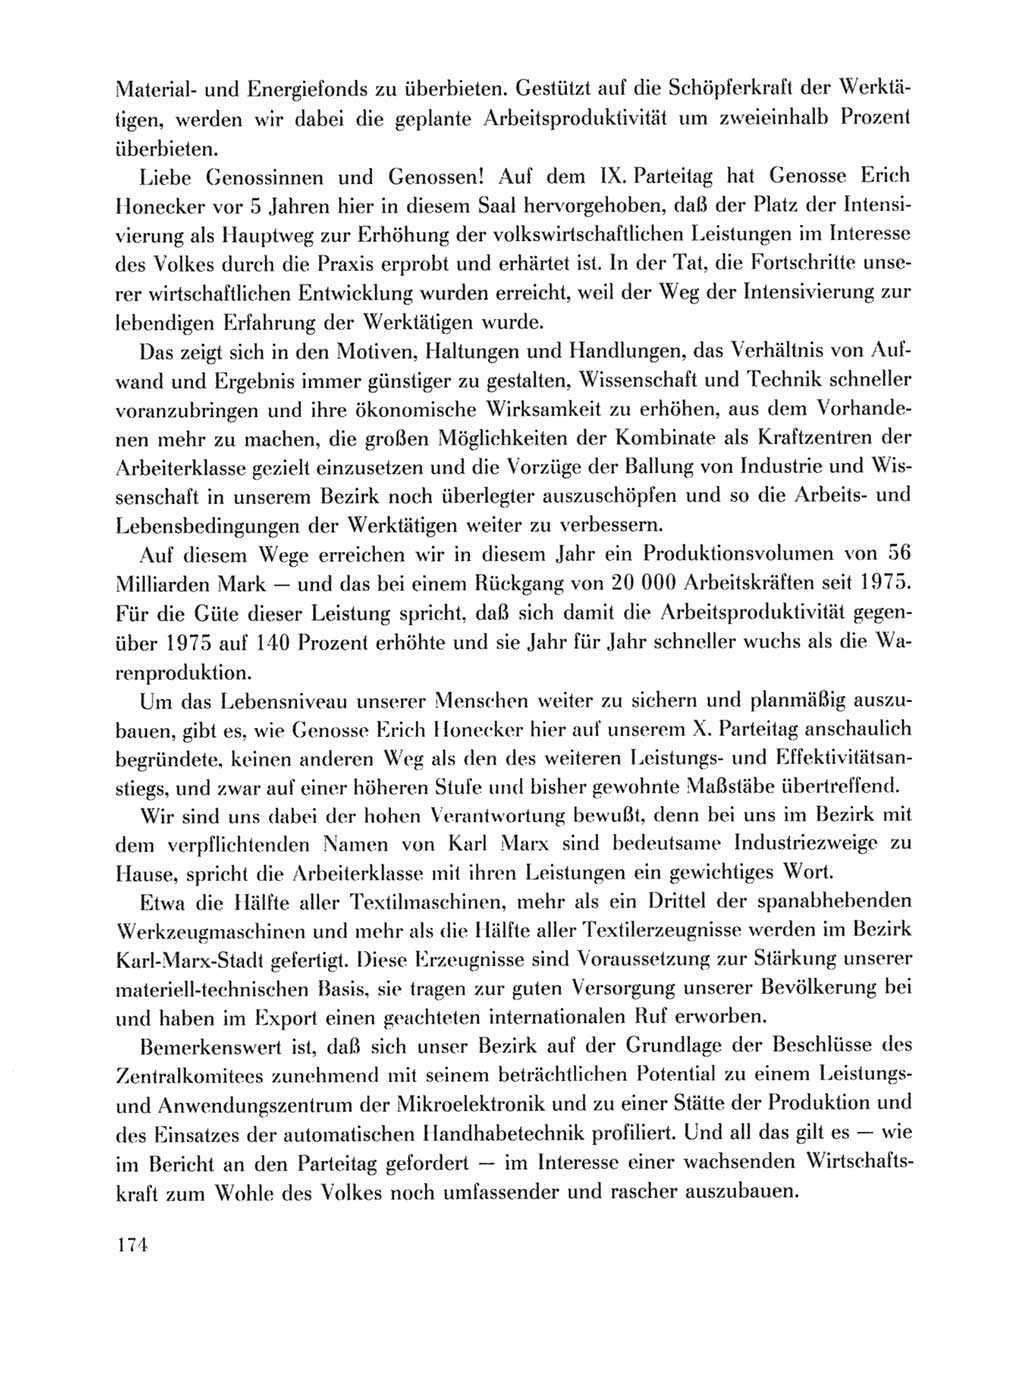 Protokoll der Verhandlungen des Ⅹ. Parteitages der Sozialistischen Einheitspartei Deutschlands (SED) [Deutsche Demokratische Republik (DDR)] 1981, Band 1, Seite 174 (Prot. Verh. Ⅹ. PT SED DDR 1981, Bd. 1, S. 174)